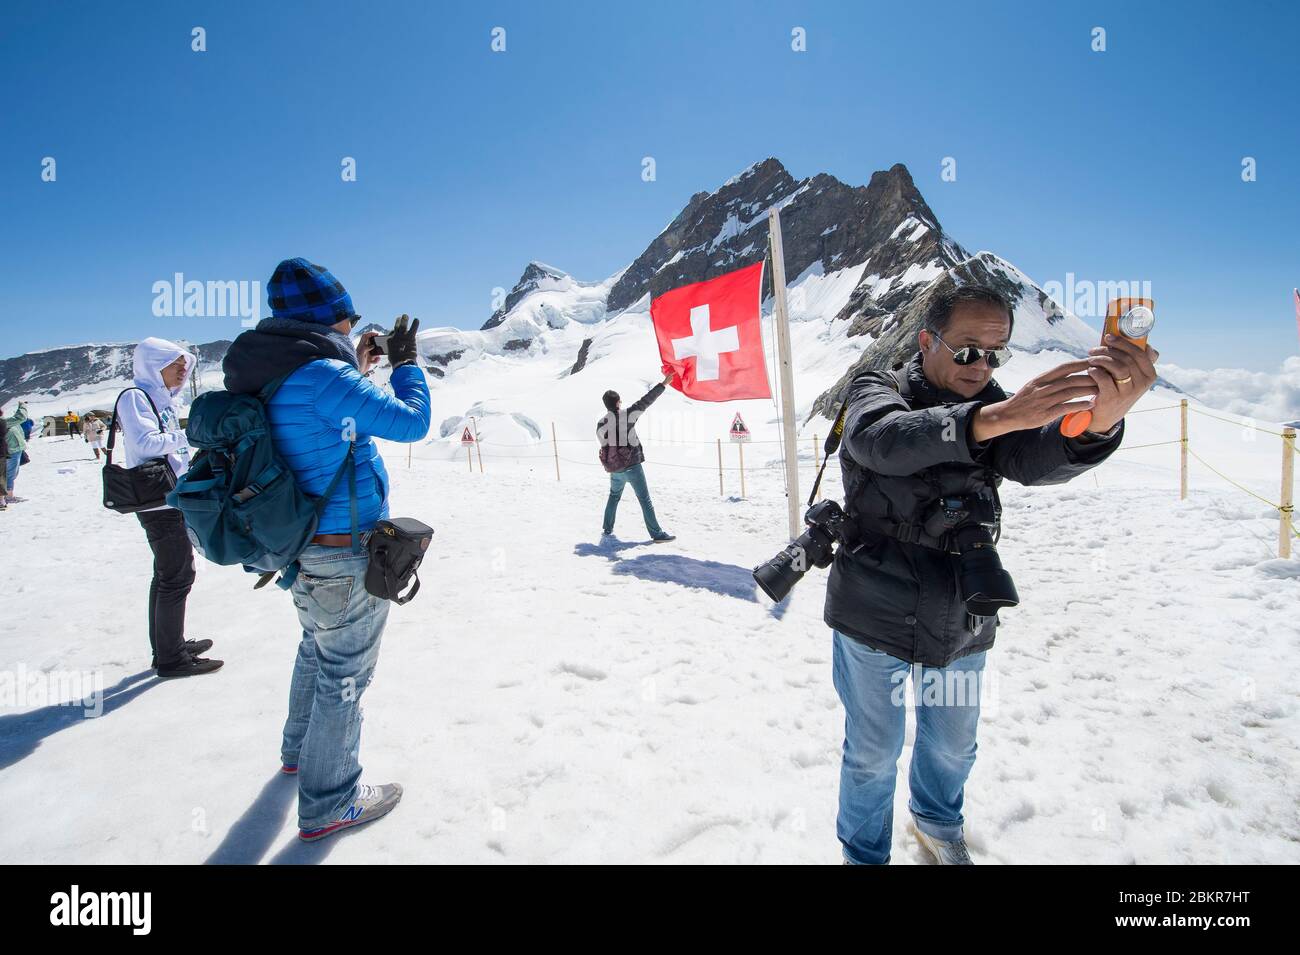 Suisse, Oberland bernois, Interlaken, pass Jungfrau au sommet de l'Europe, séance photo improvisée par les Asiatiques sur le glacier, patrimoine mondial de l'UNESCO Banque D'Images